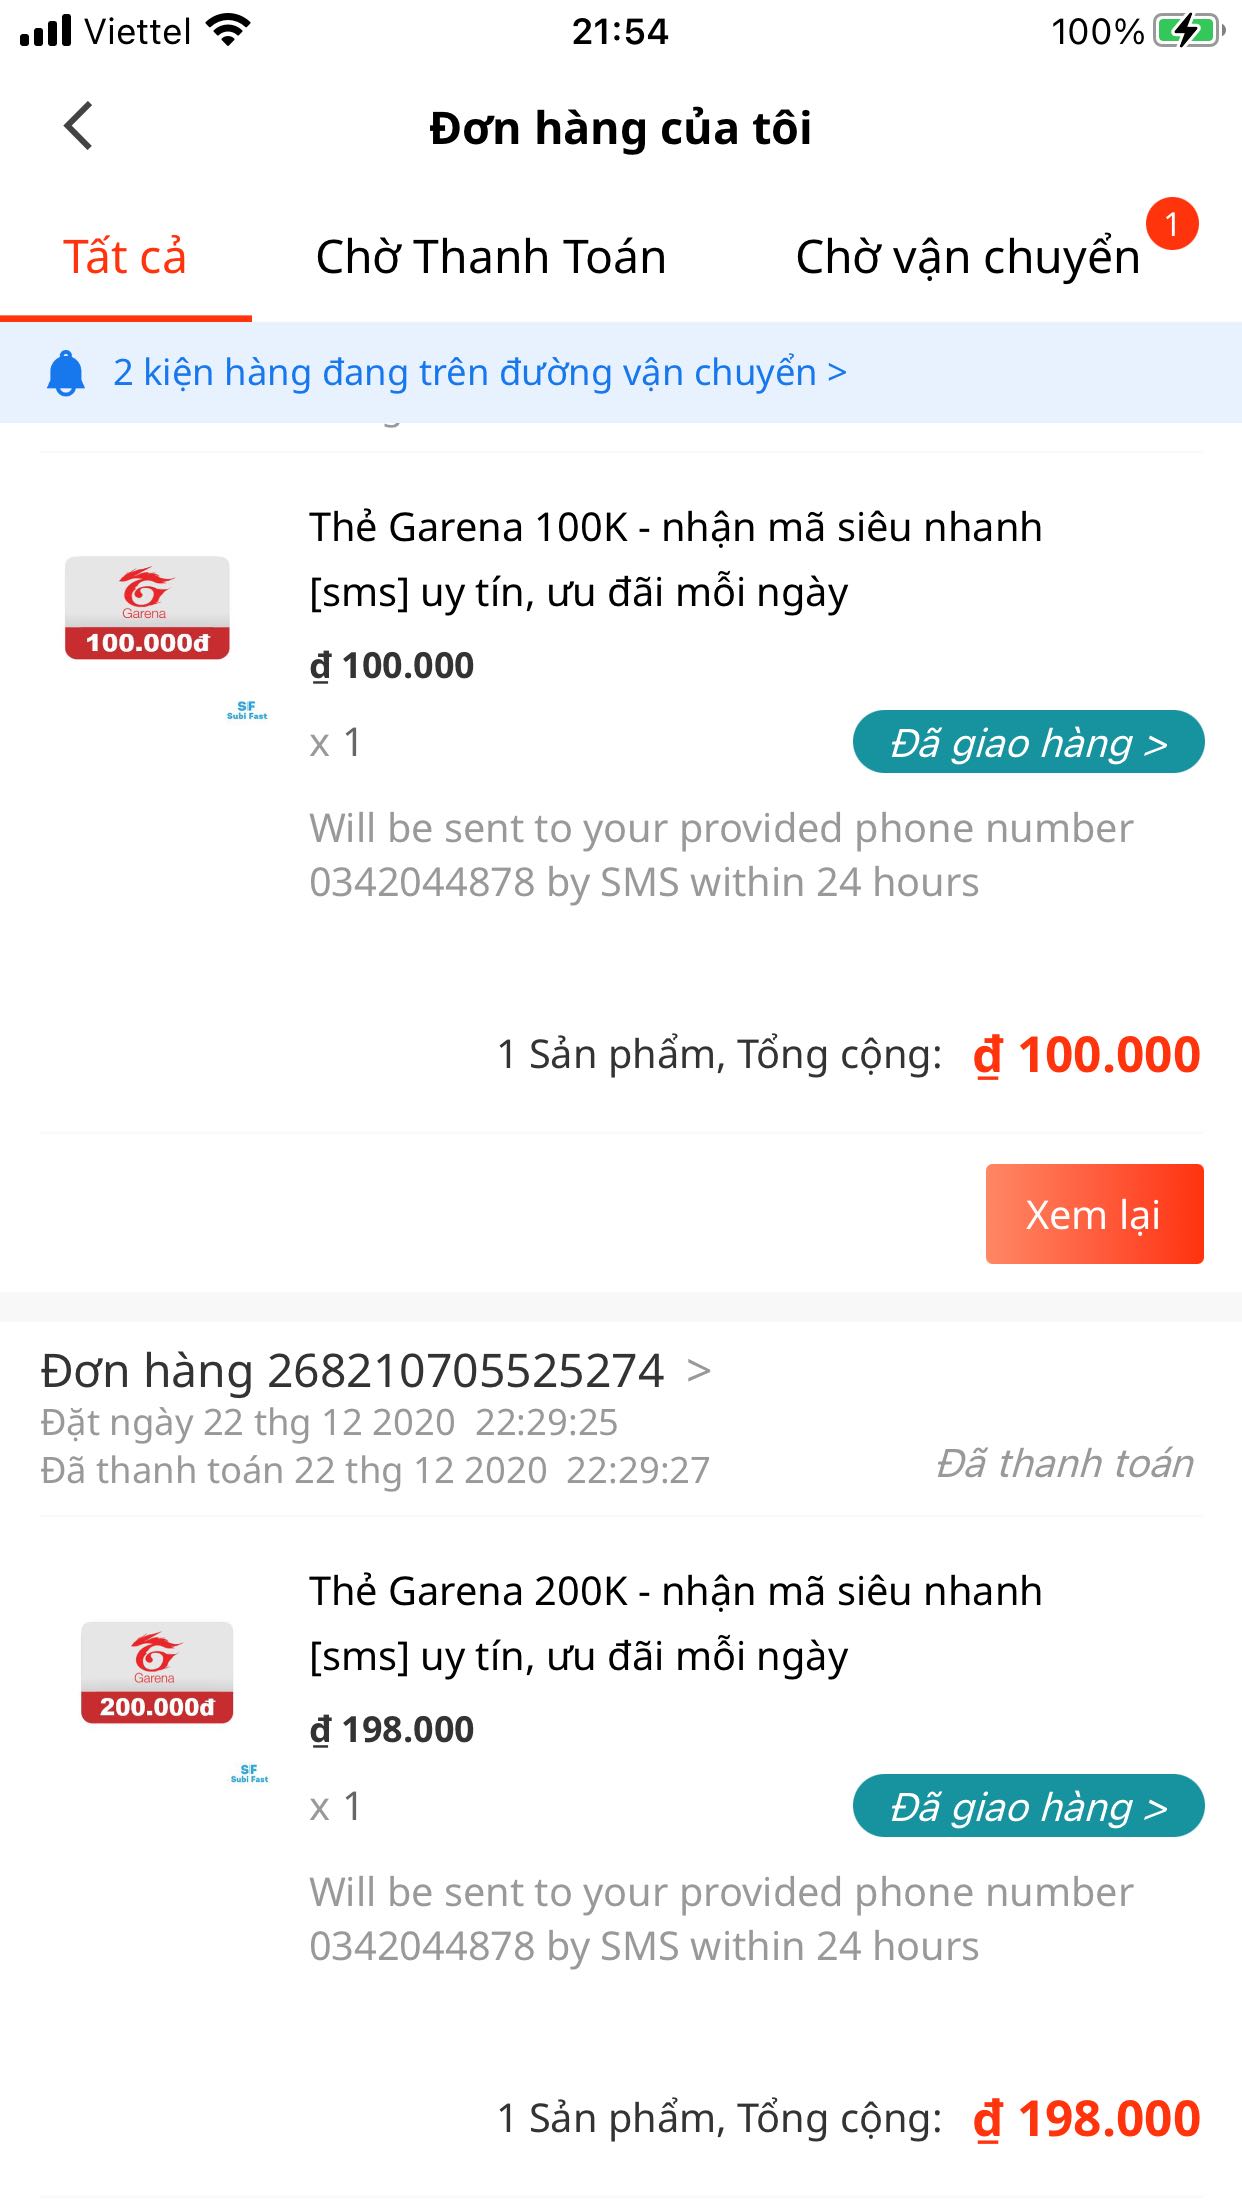 Thẻ Garena 500k sẽ giúp bạn mua được một lượng lớn vật phẩm quý giá trong trò chơi yêu thích của bạn. Hãy xem ngay hình ảnh liên quan đến thẻ Garena 500k để mua sắm với giá rẻ nhất và chơi game tối đa hóa hiệu quả.